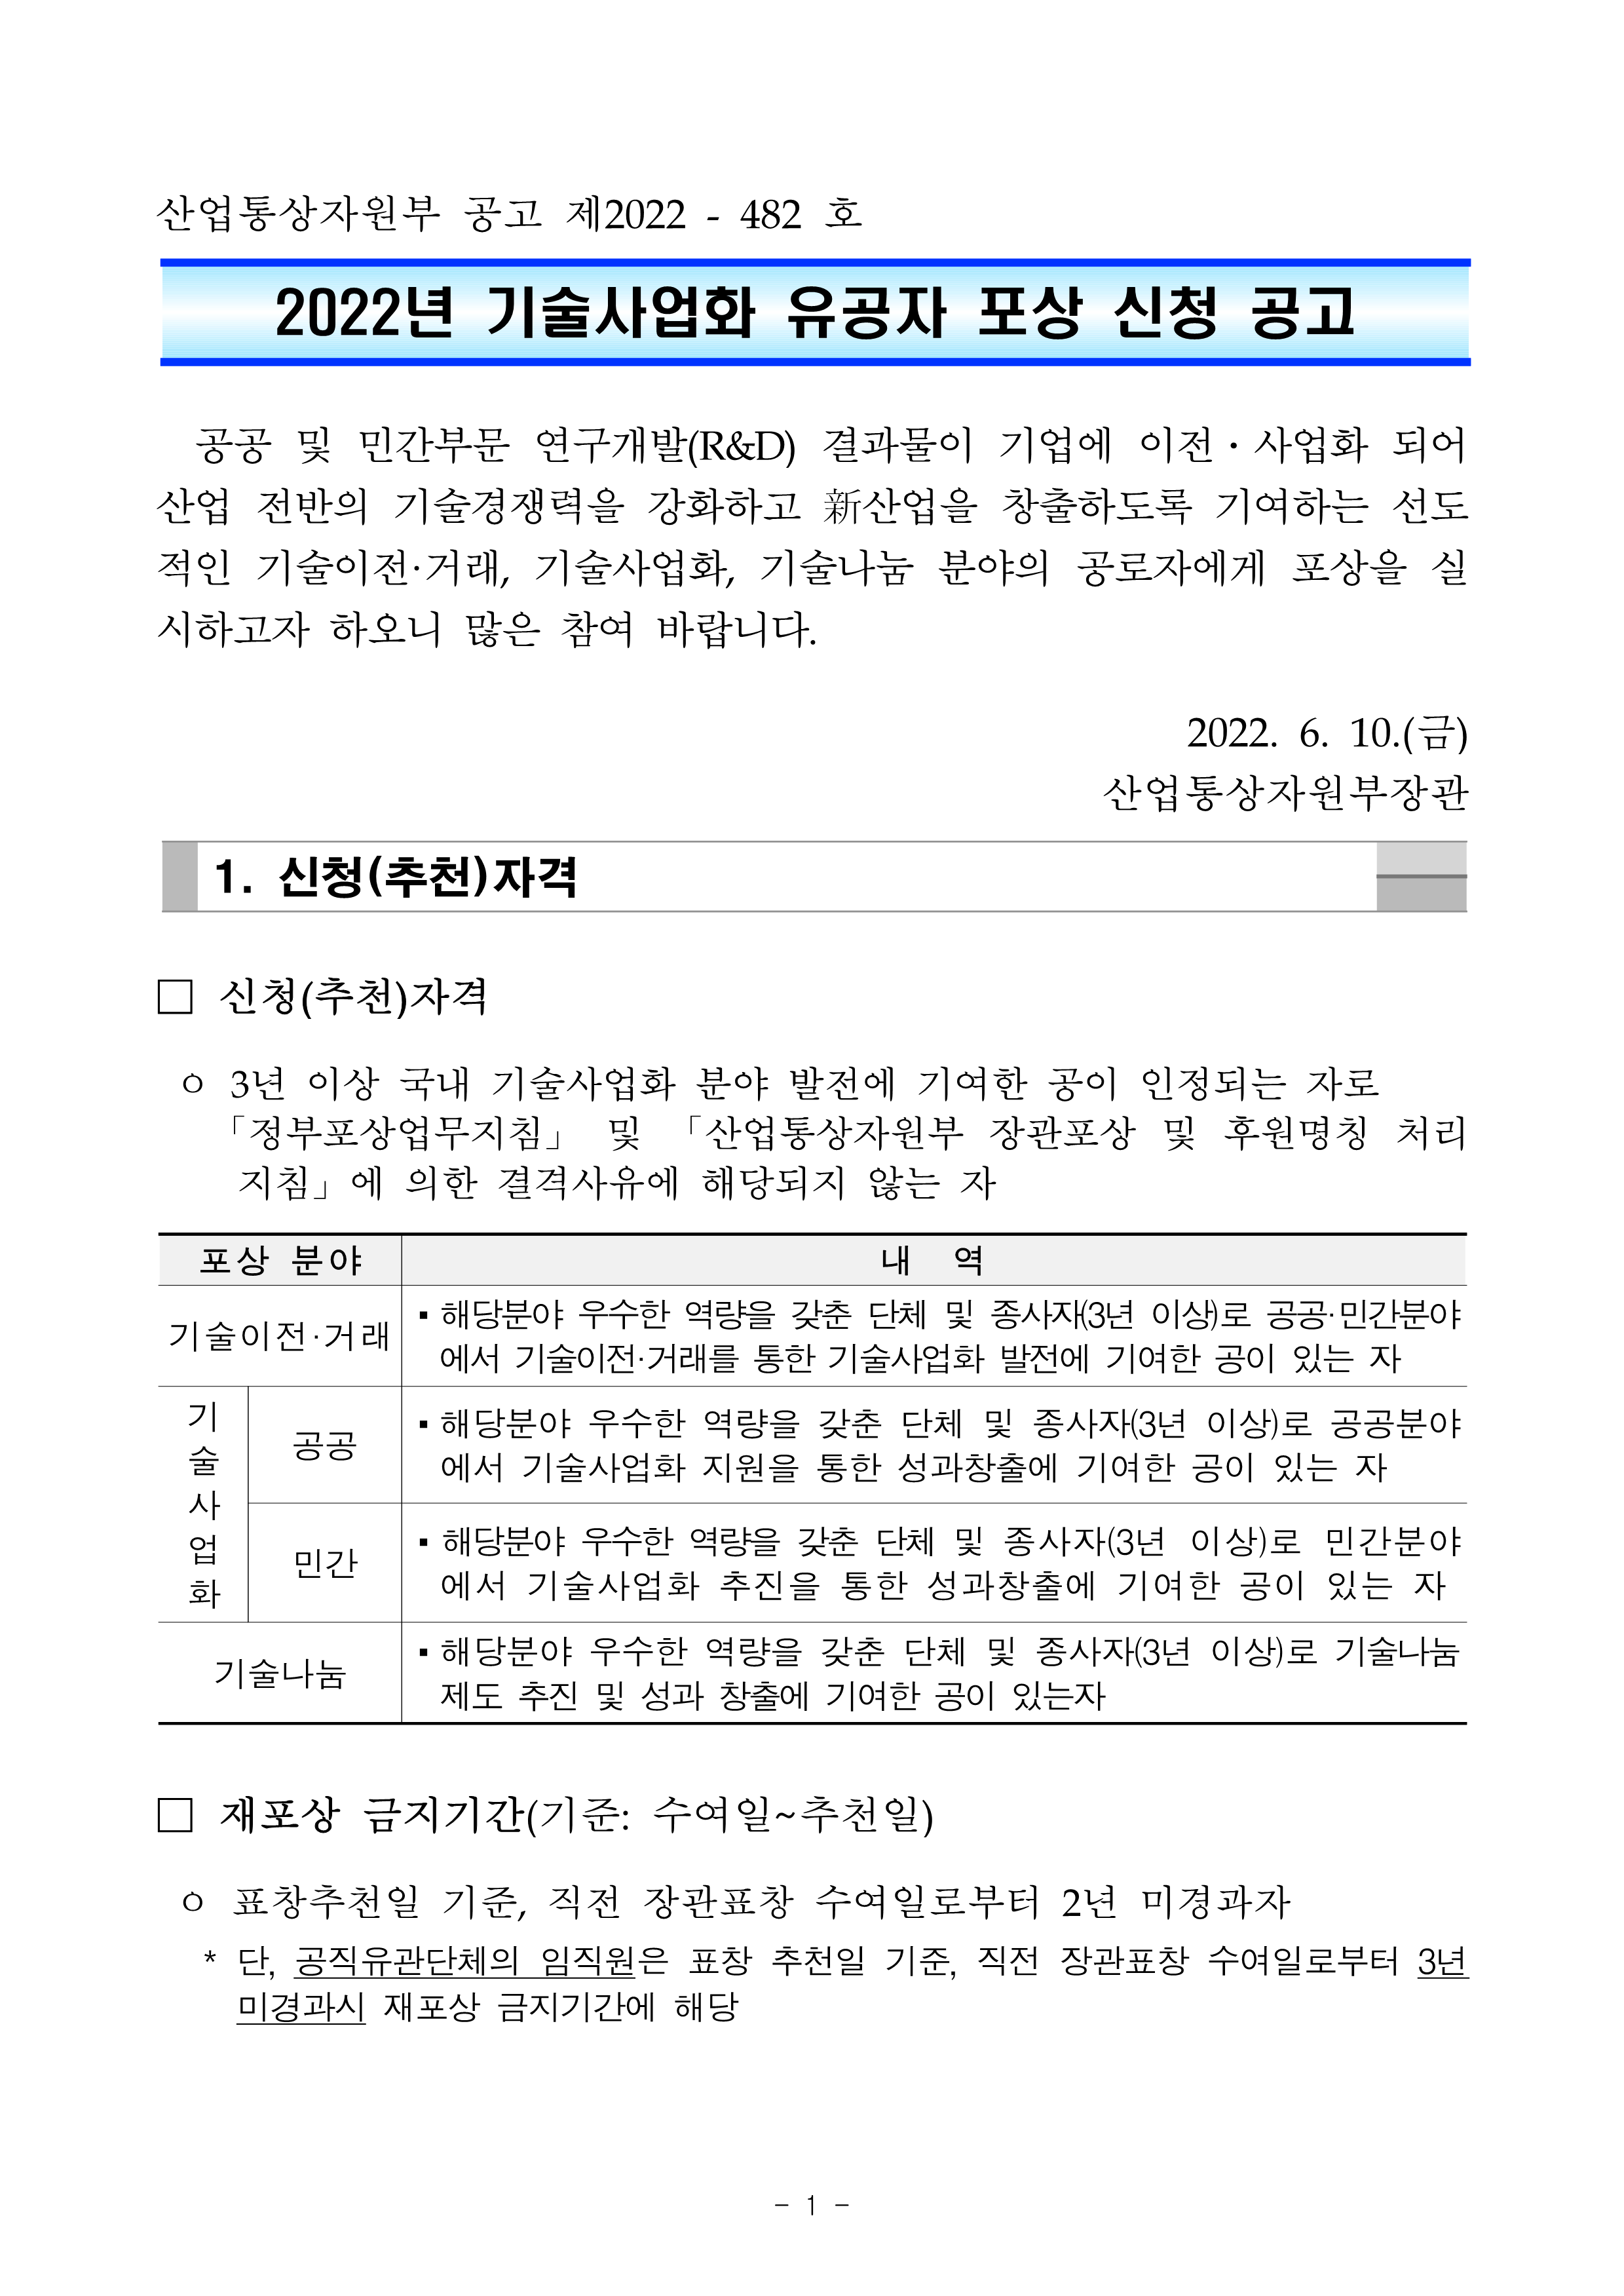 붙임1. 2022년 기술사업화 유공자 포상 공고문_ 최종_1.png